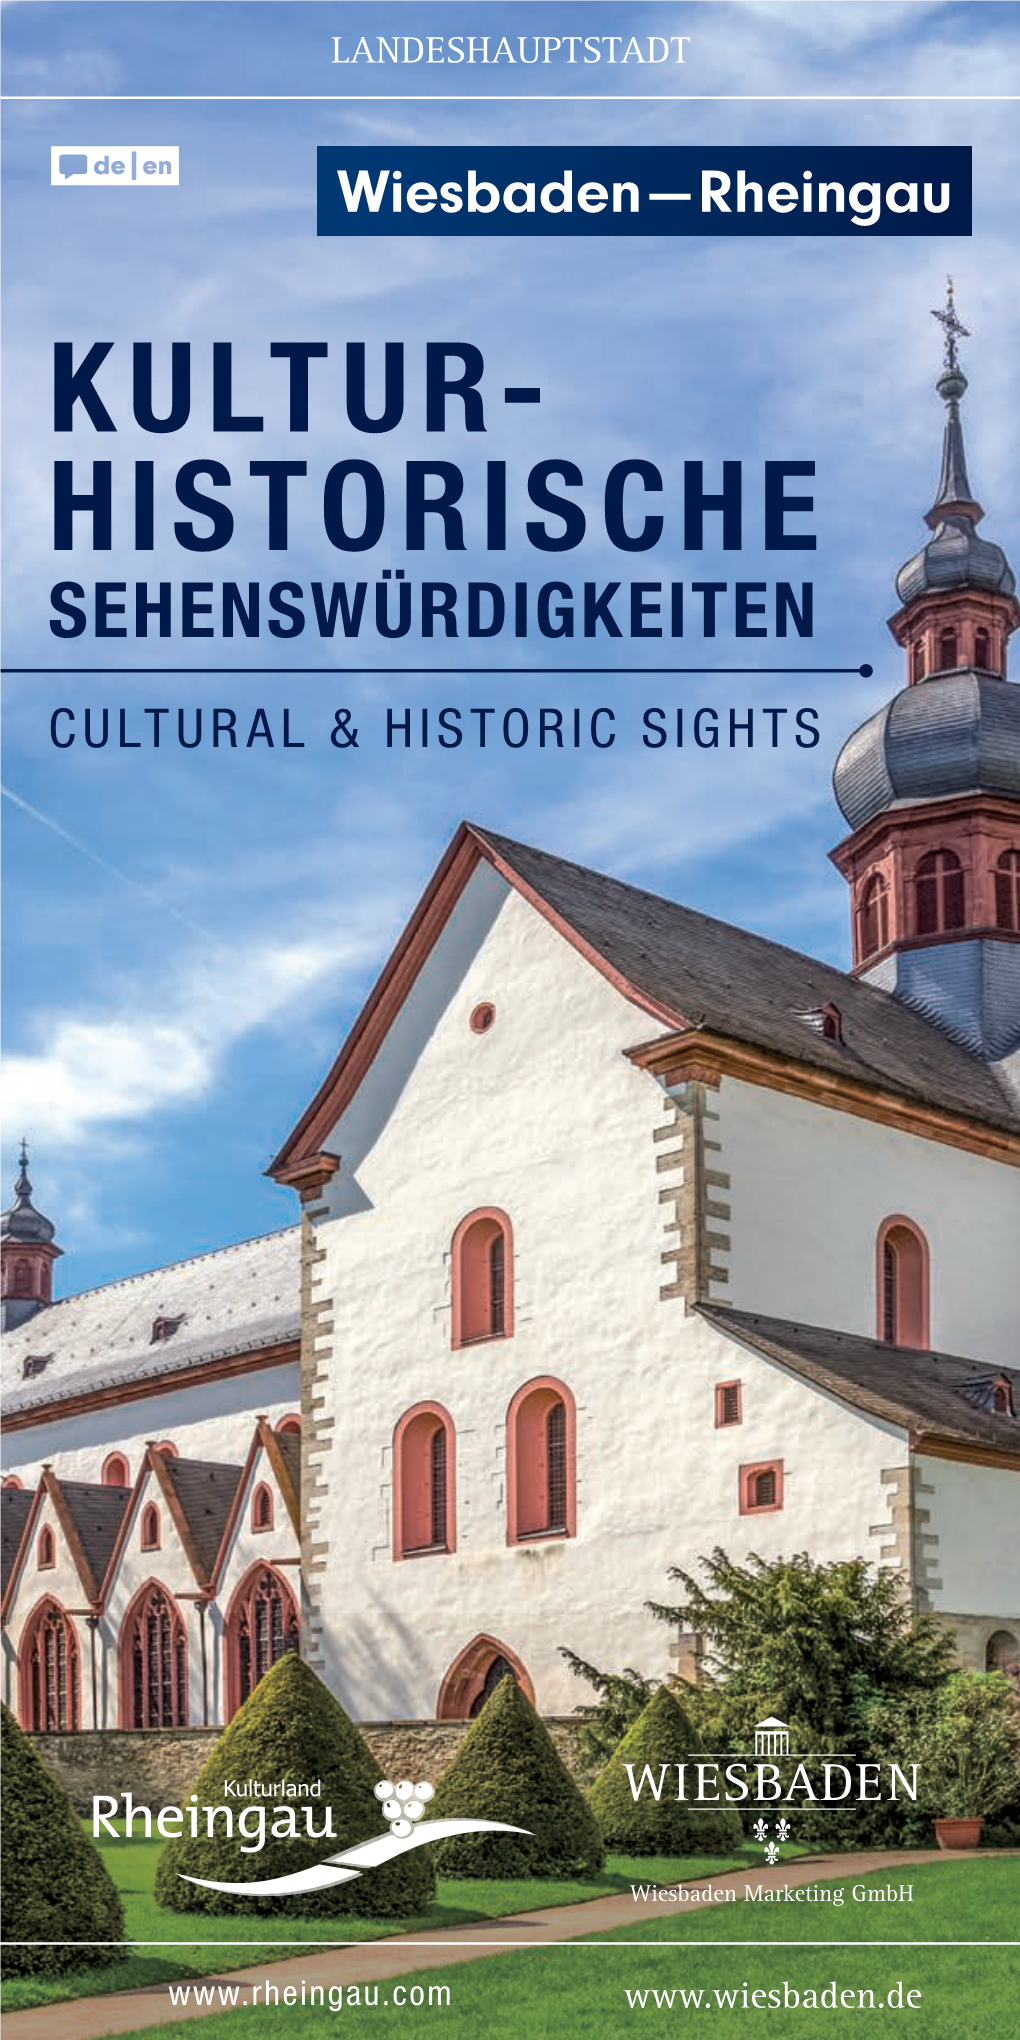 Kultur- Historische Sehenswürdigkeiten Cultural & Historic Sights